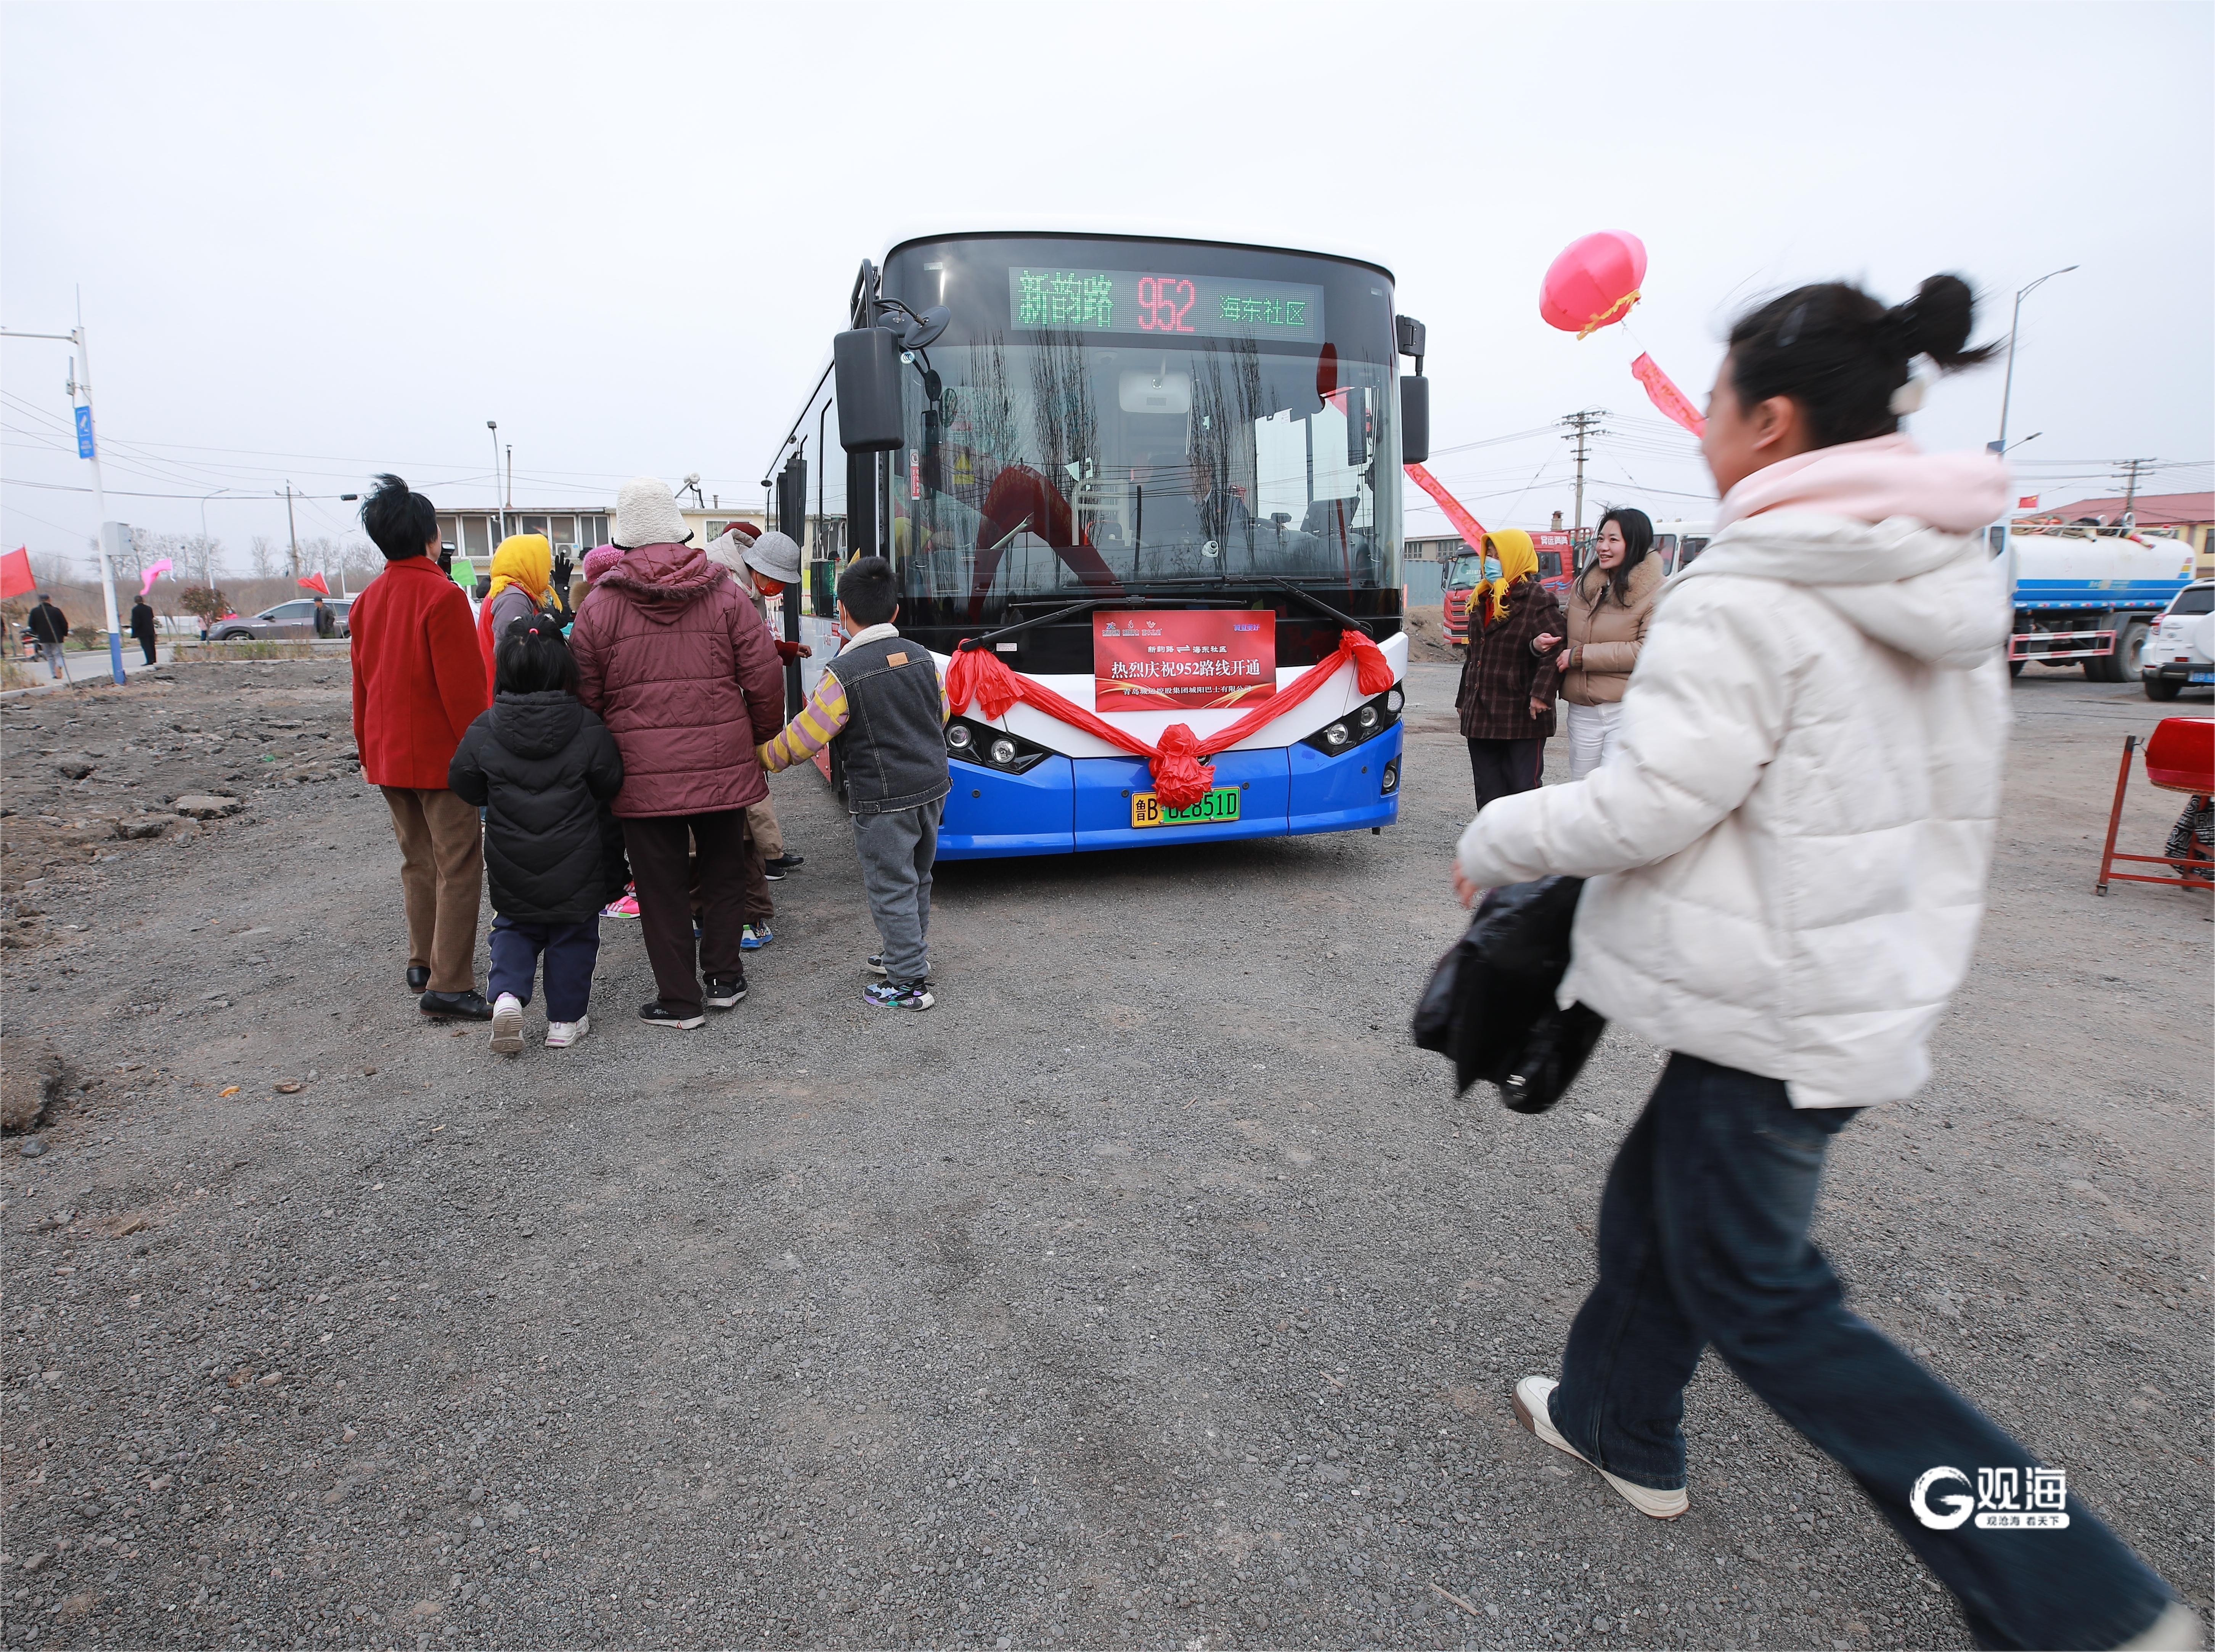 青岛952路公交开通,这个社区居民出行最后一公里不难了